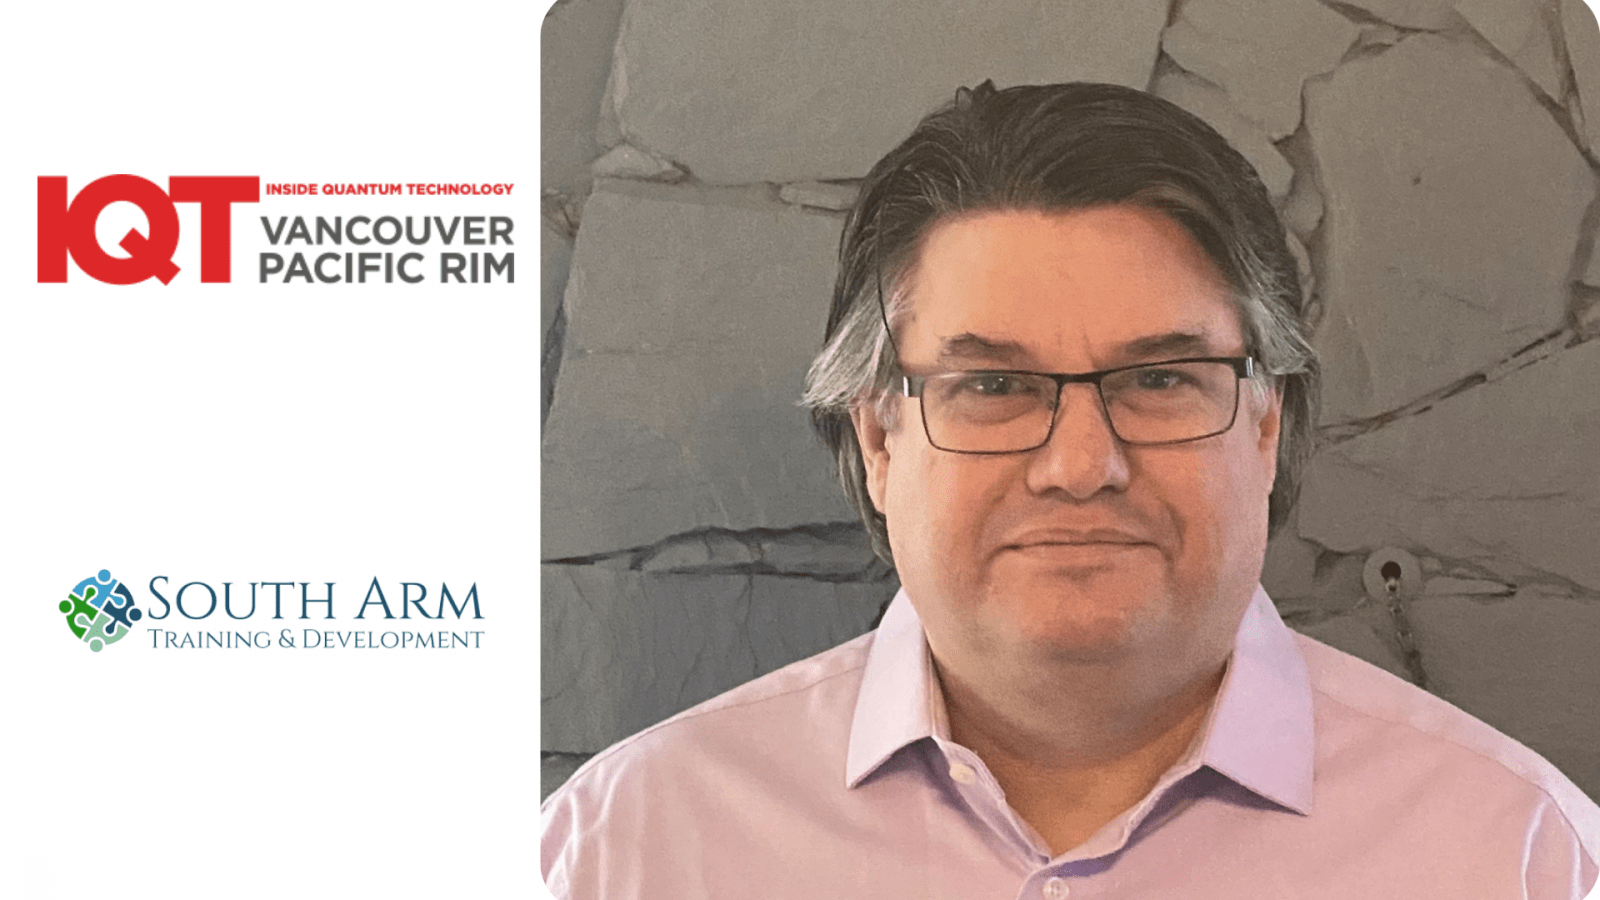 دينيس جرين، مدير شركة South Arm Training and Development Ltd. هو أحد المتحدثين في IQT Vancouver/Pacific Rim لعام 2024 - داخل تكنولوجيا الكم